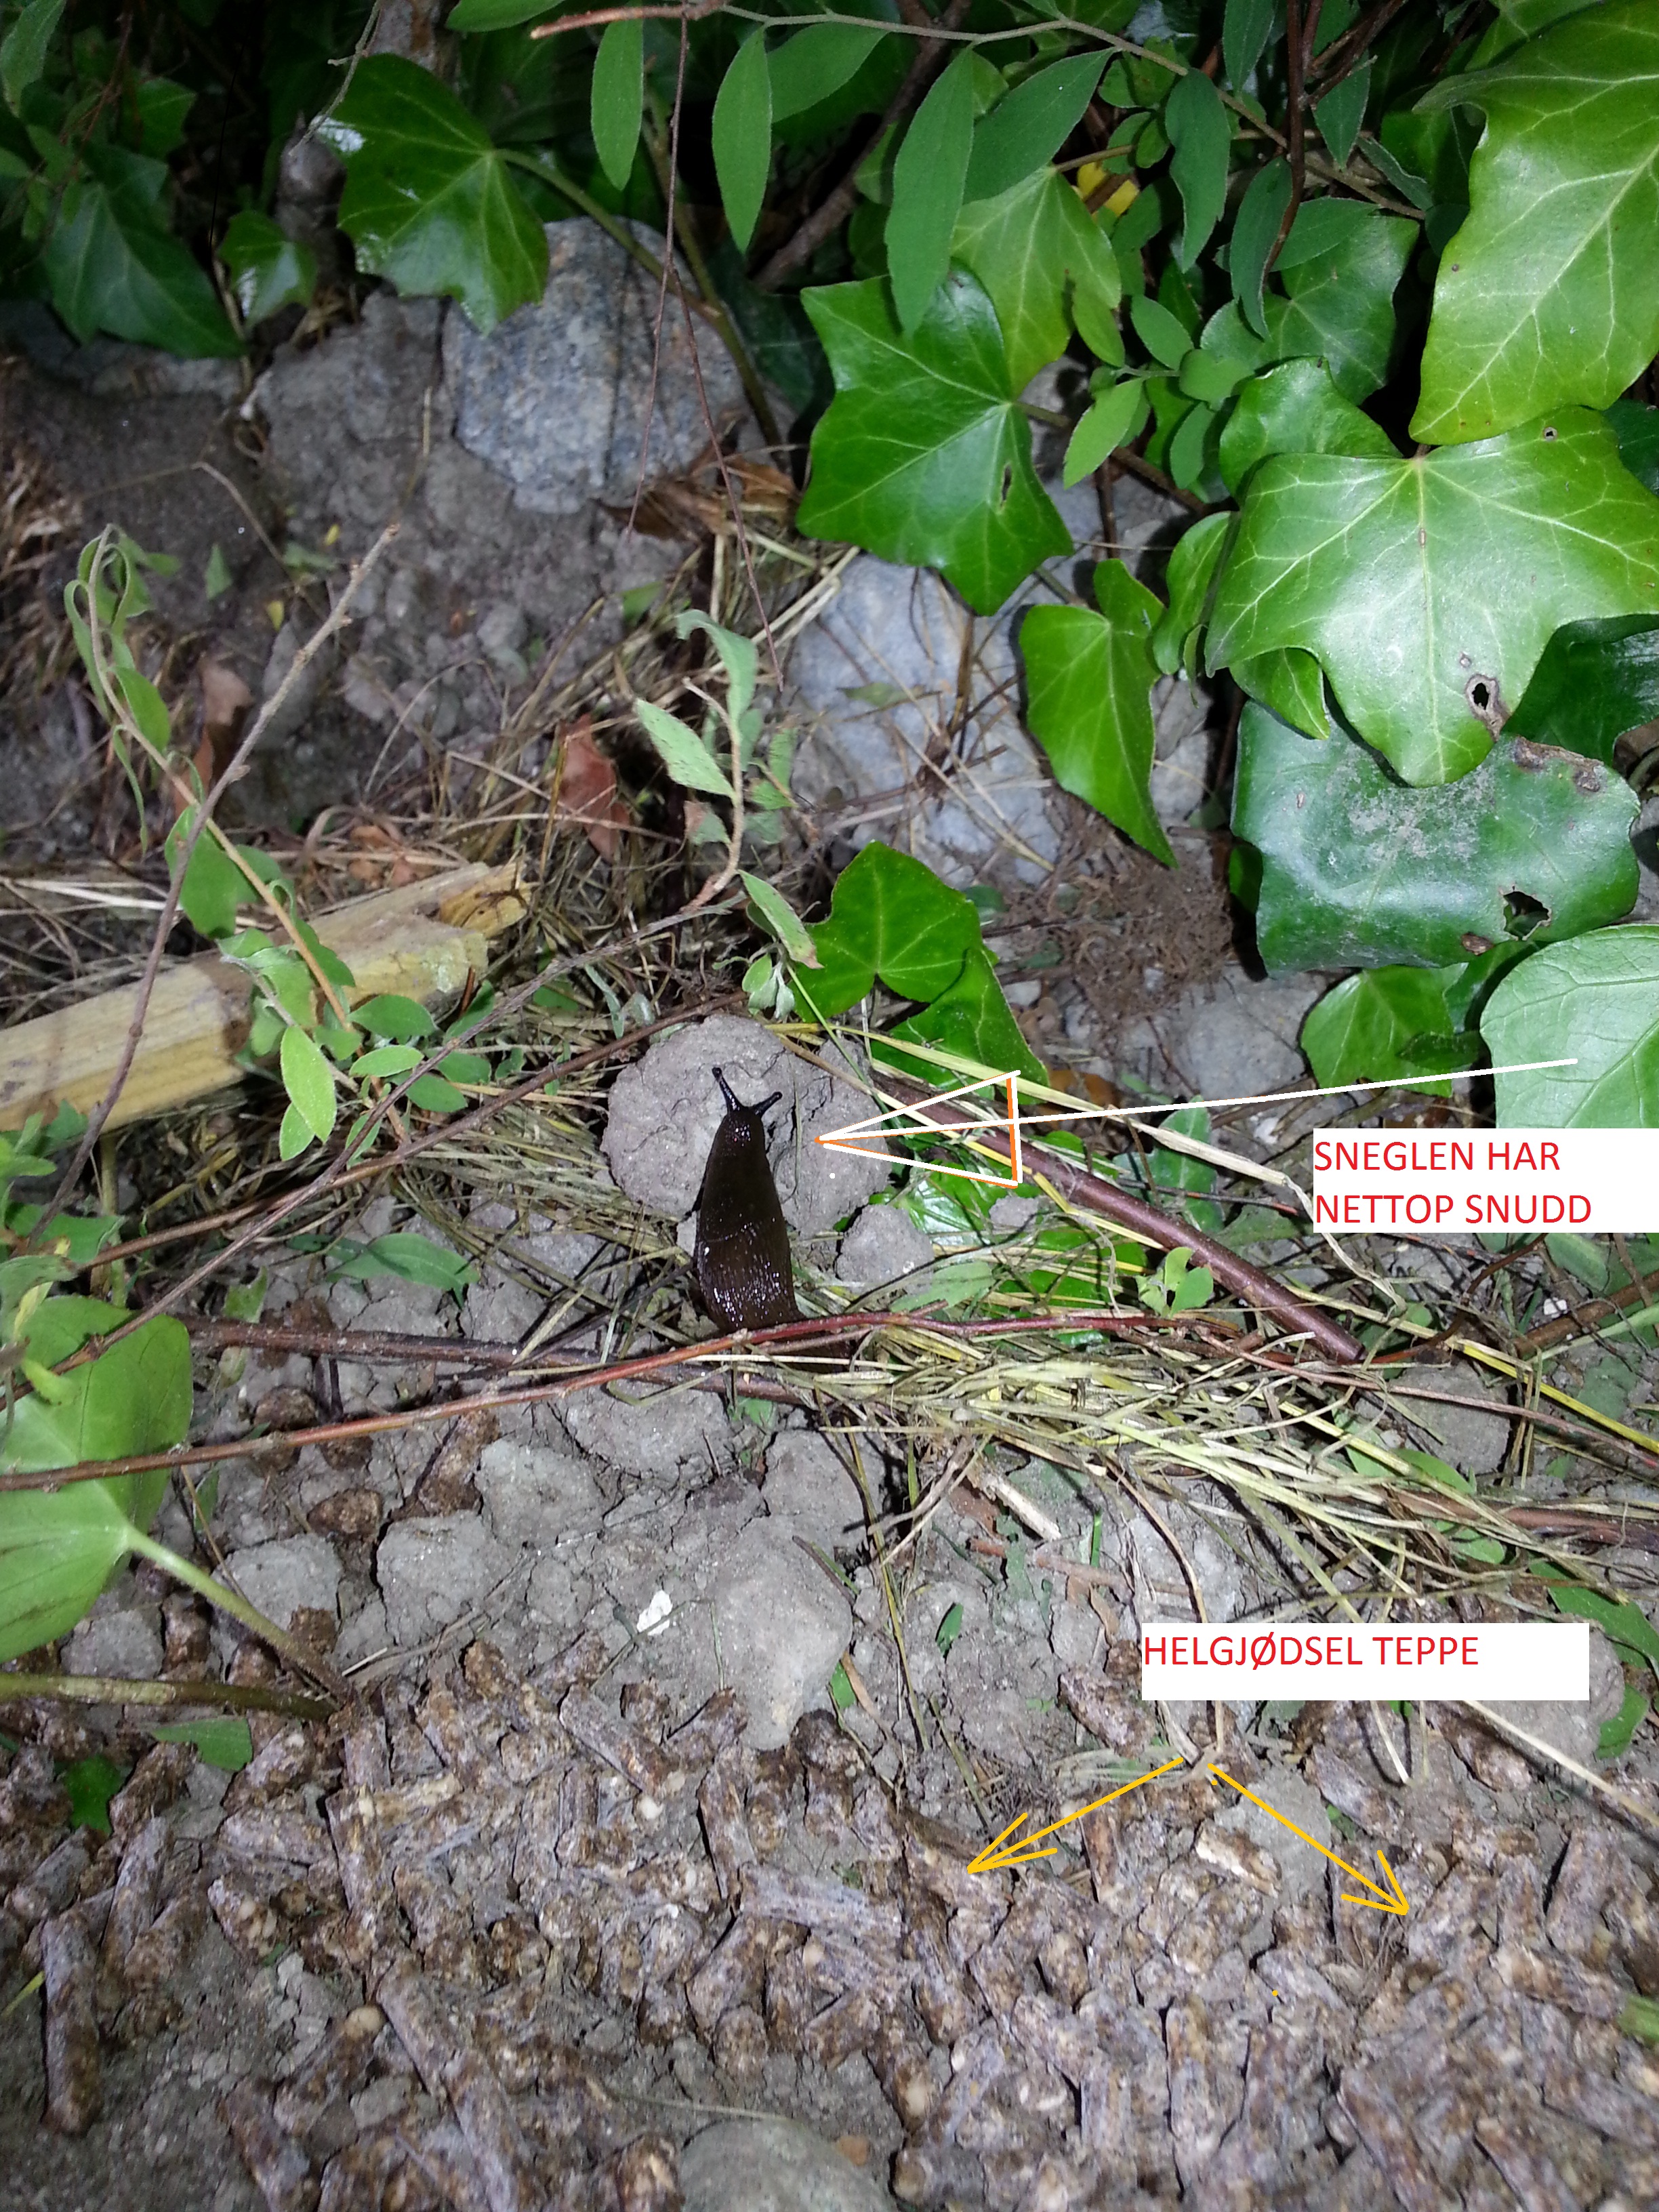 Snegler i hagen vs helgjødsel, noen som har erfaring ? - snegle.jpg - gauk1